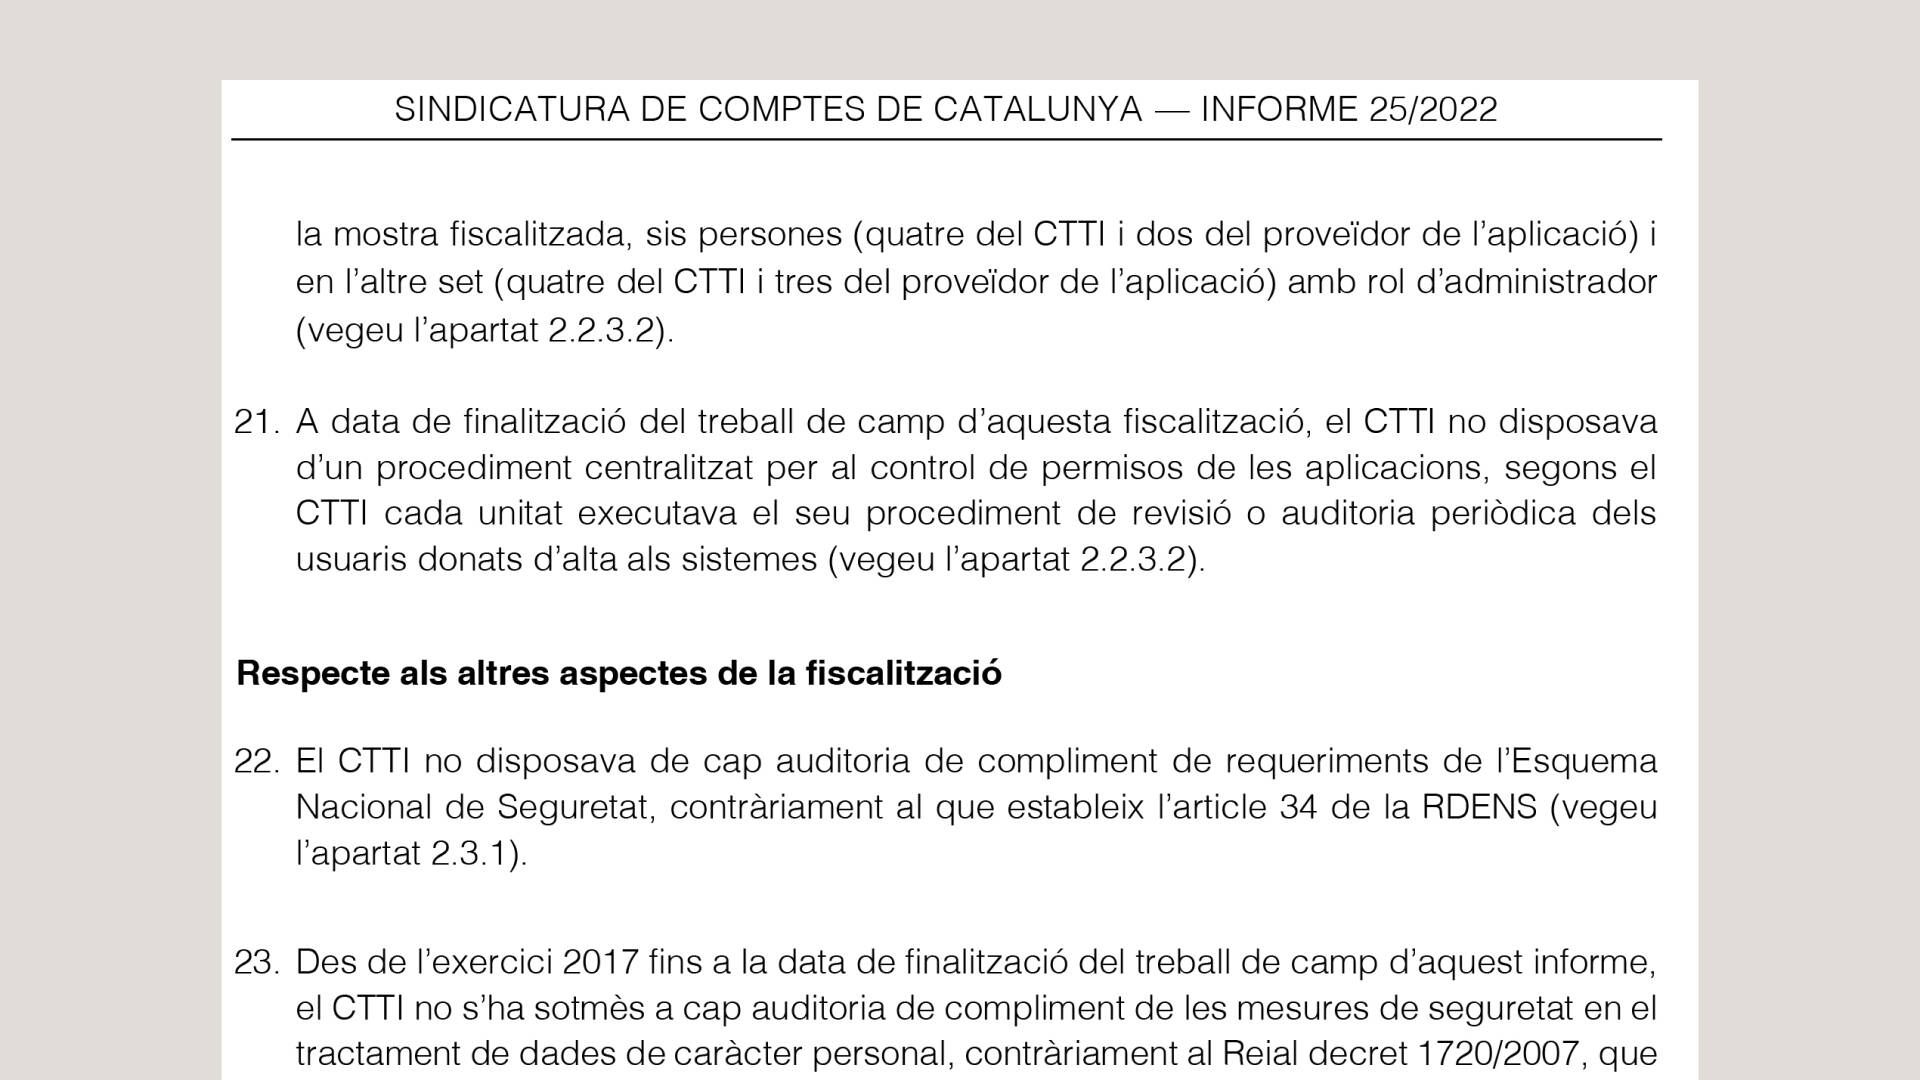 Pinche para leer el informe de la Sindicatura de Comptes de Catalunya.